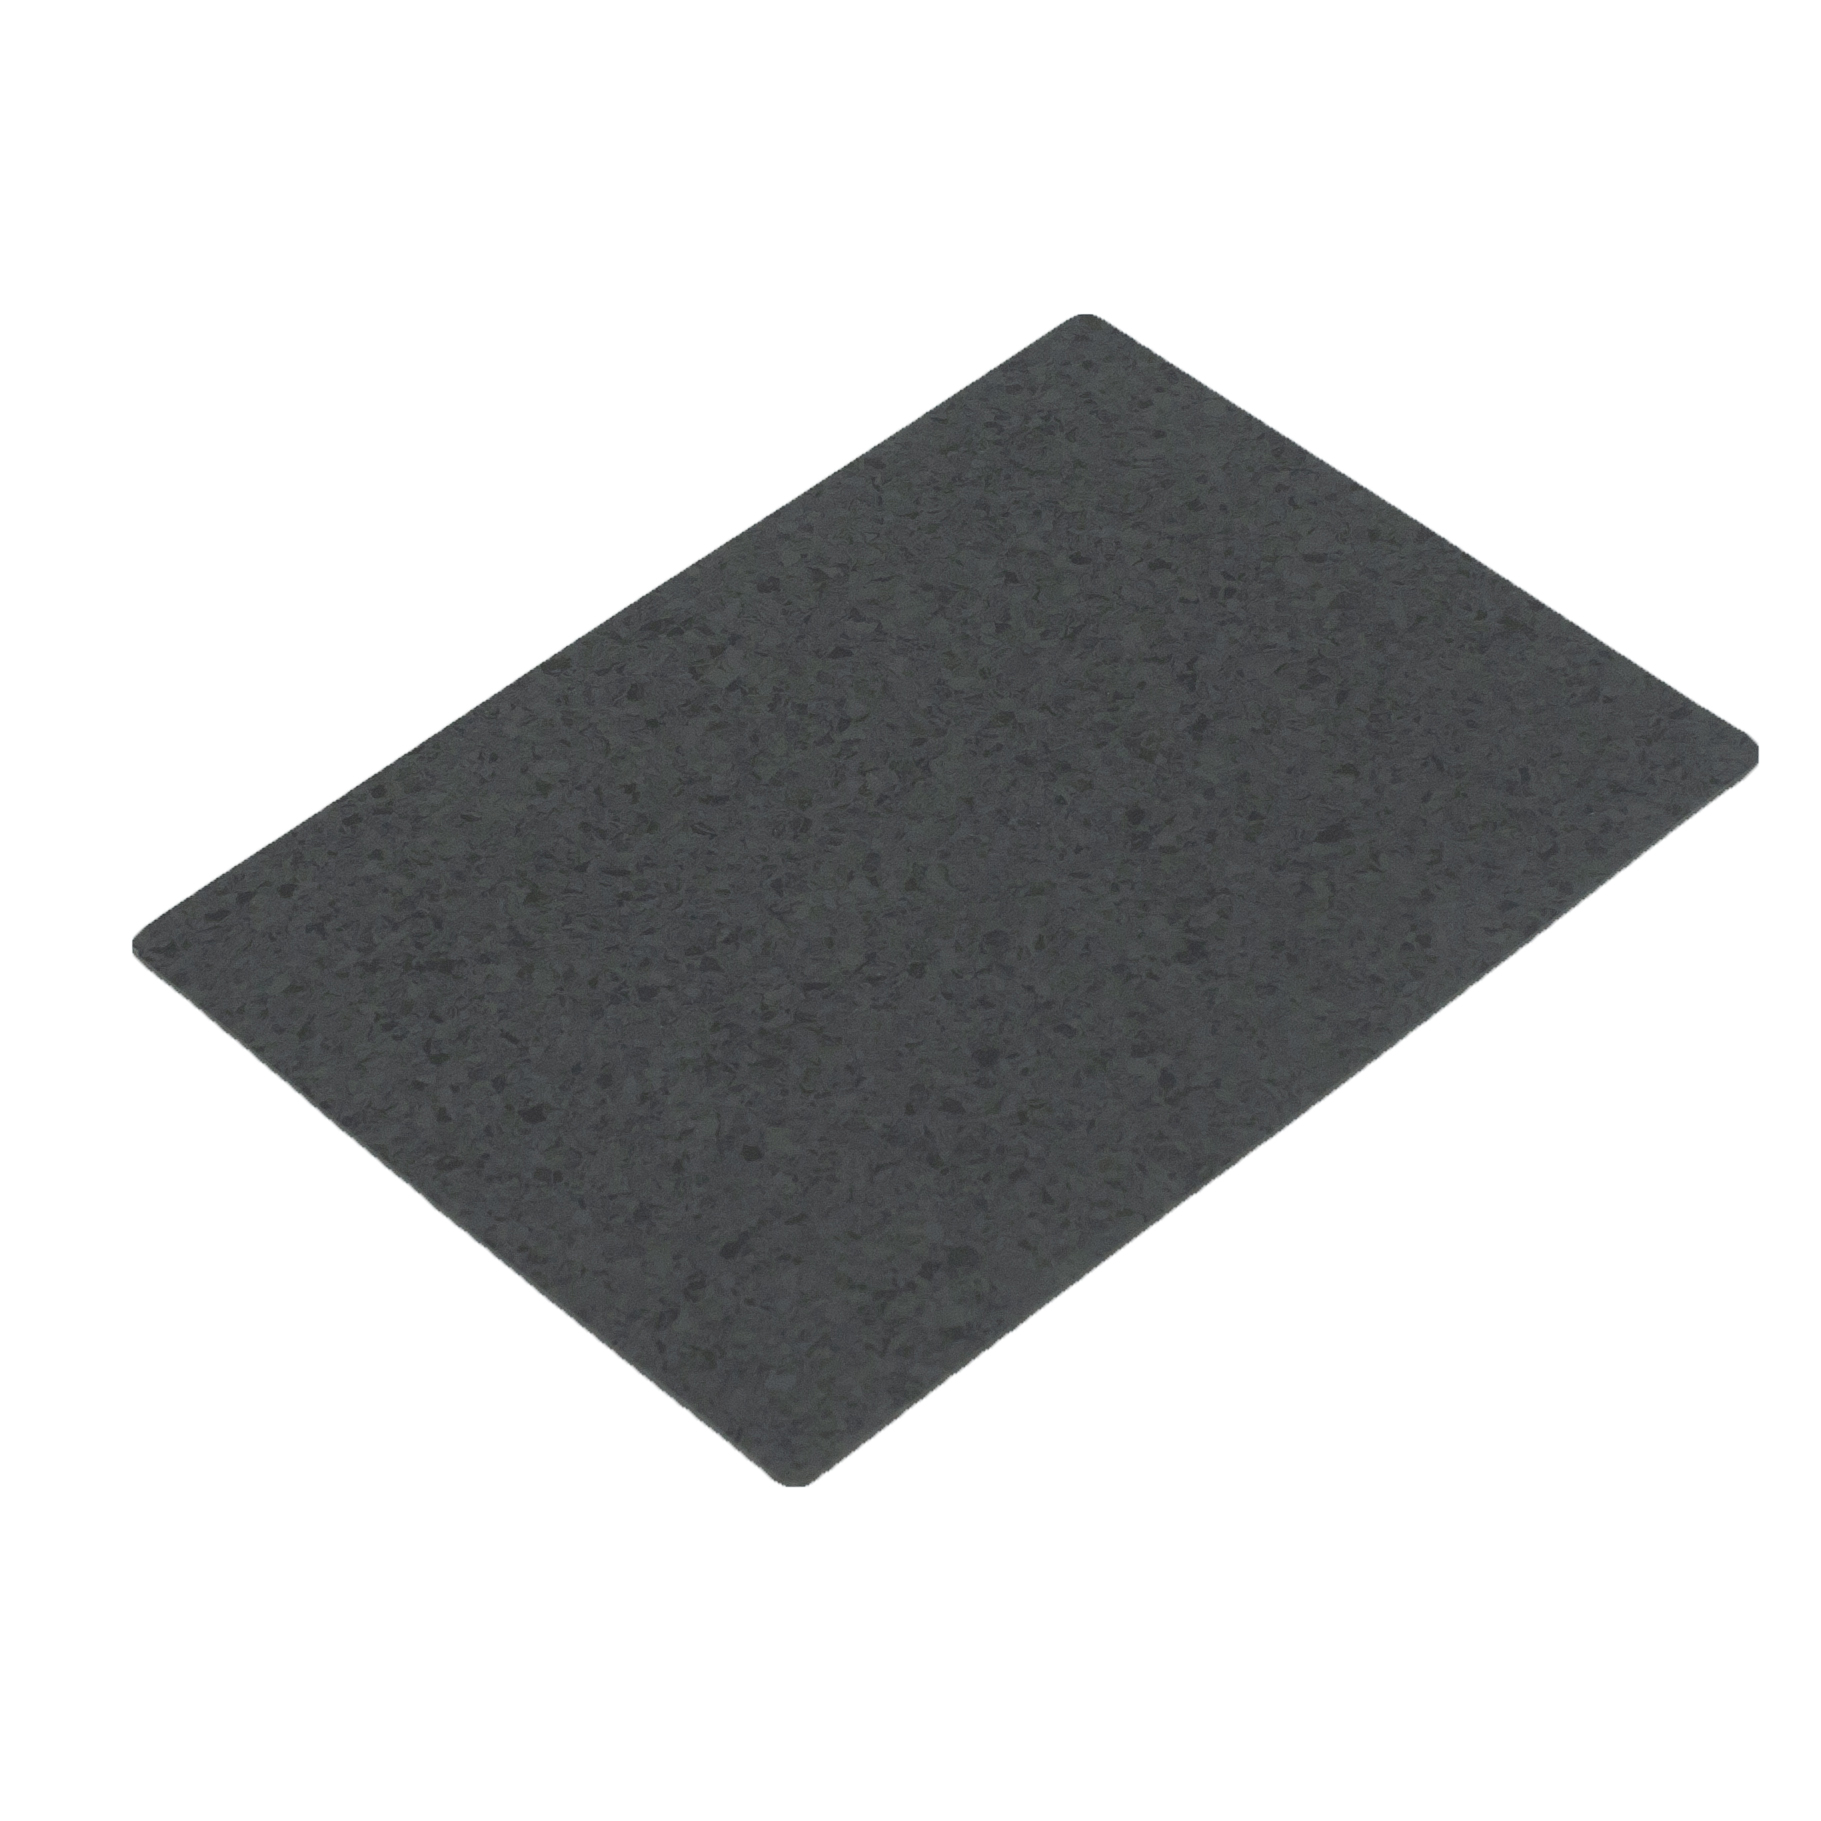 Black 5mm PVC Flooring For Basement